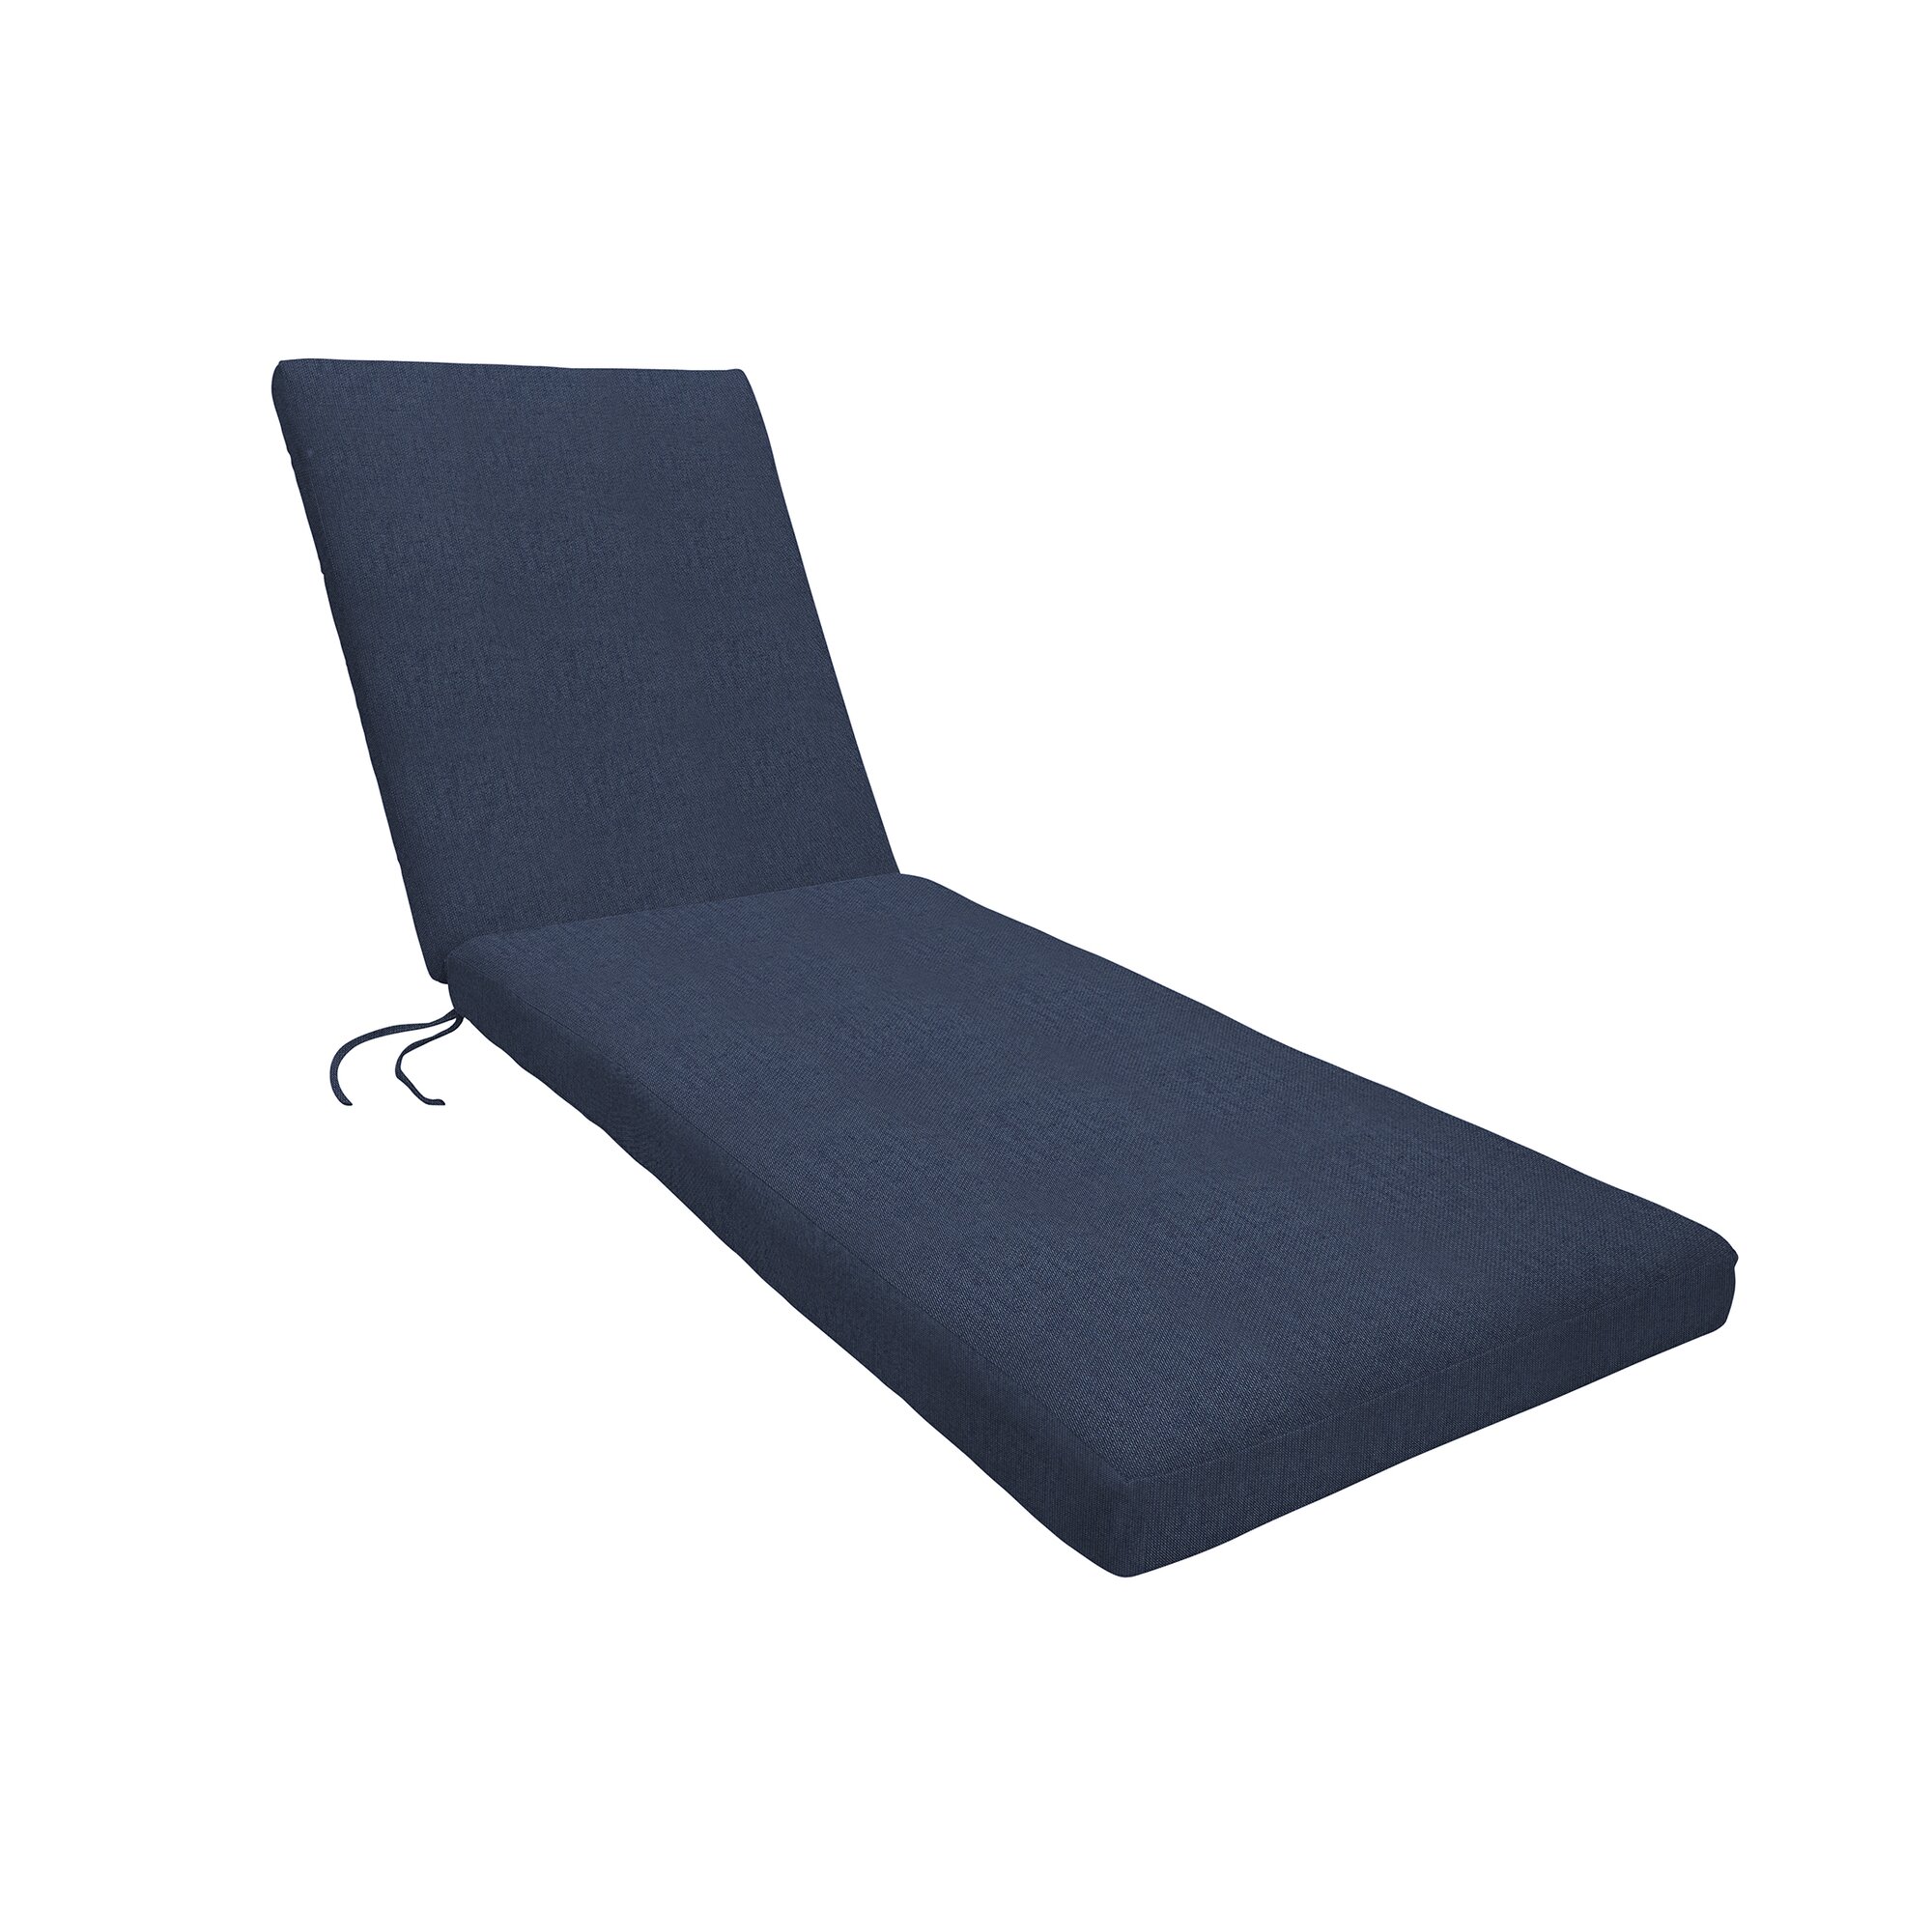 Eddie Bauer Sunbrella Chaise Lounge Cushion & Reviews 